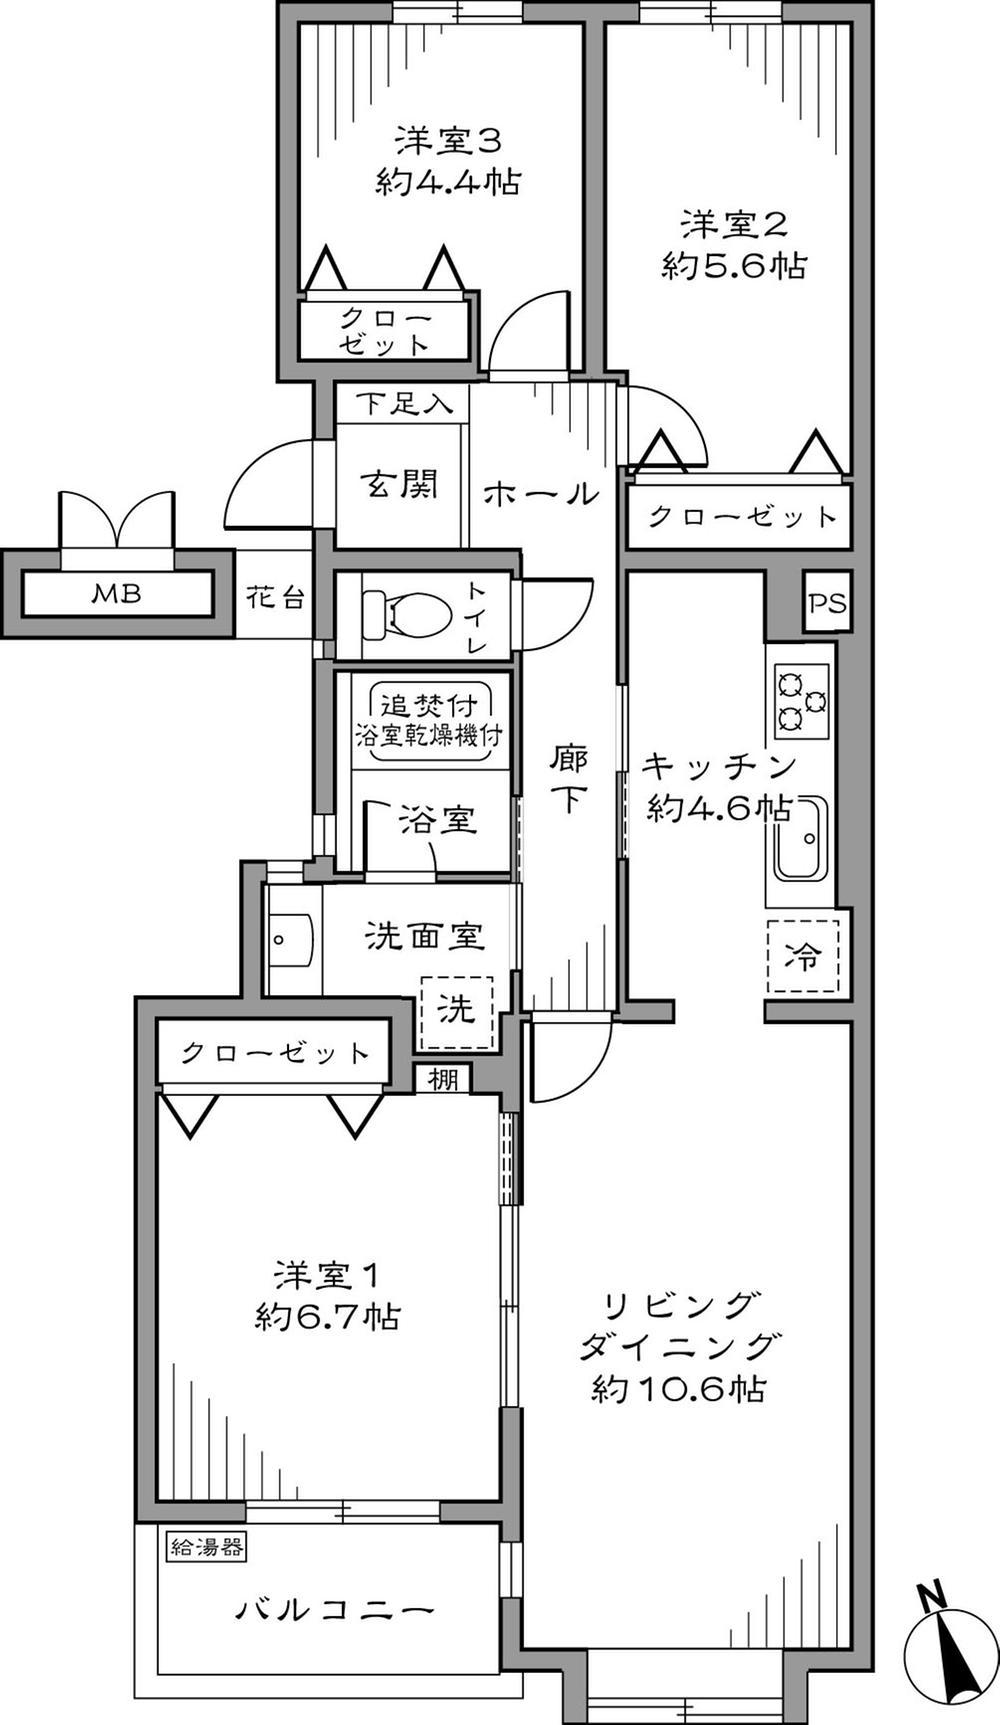 Floor plan. 3LDK 71.92 sq m  25800000